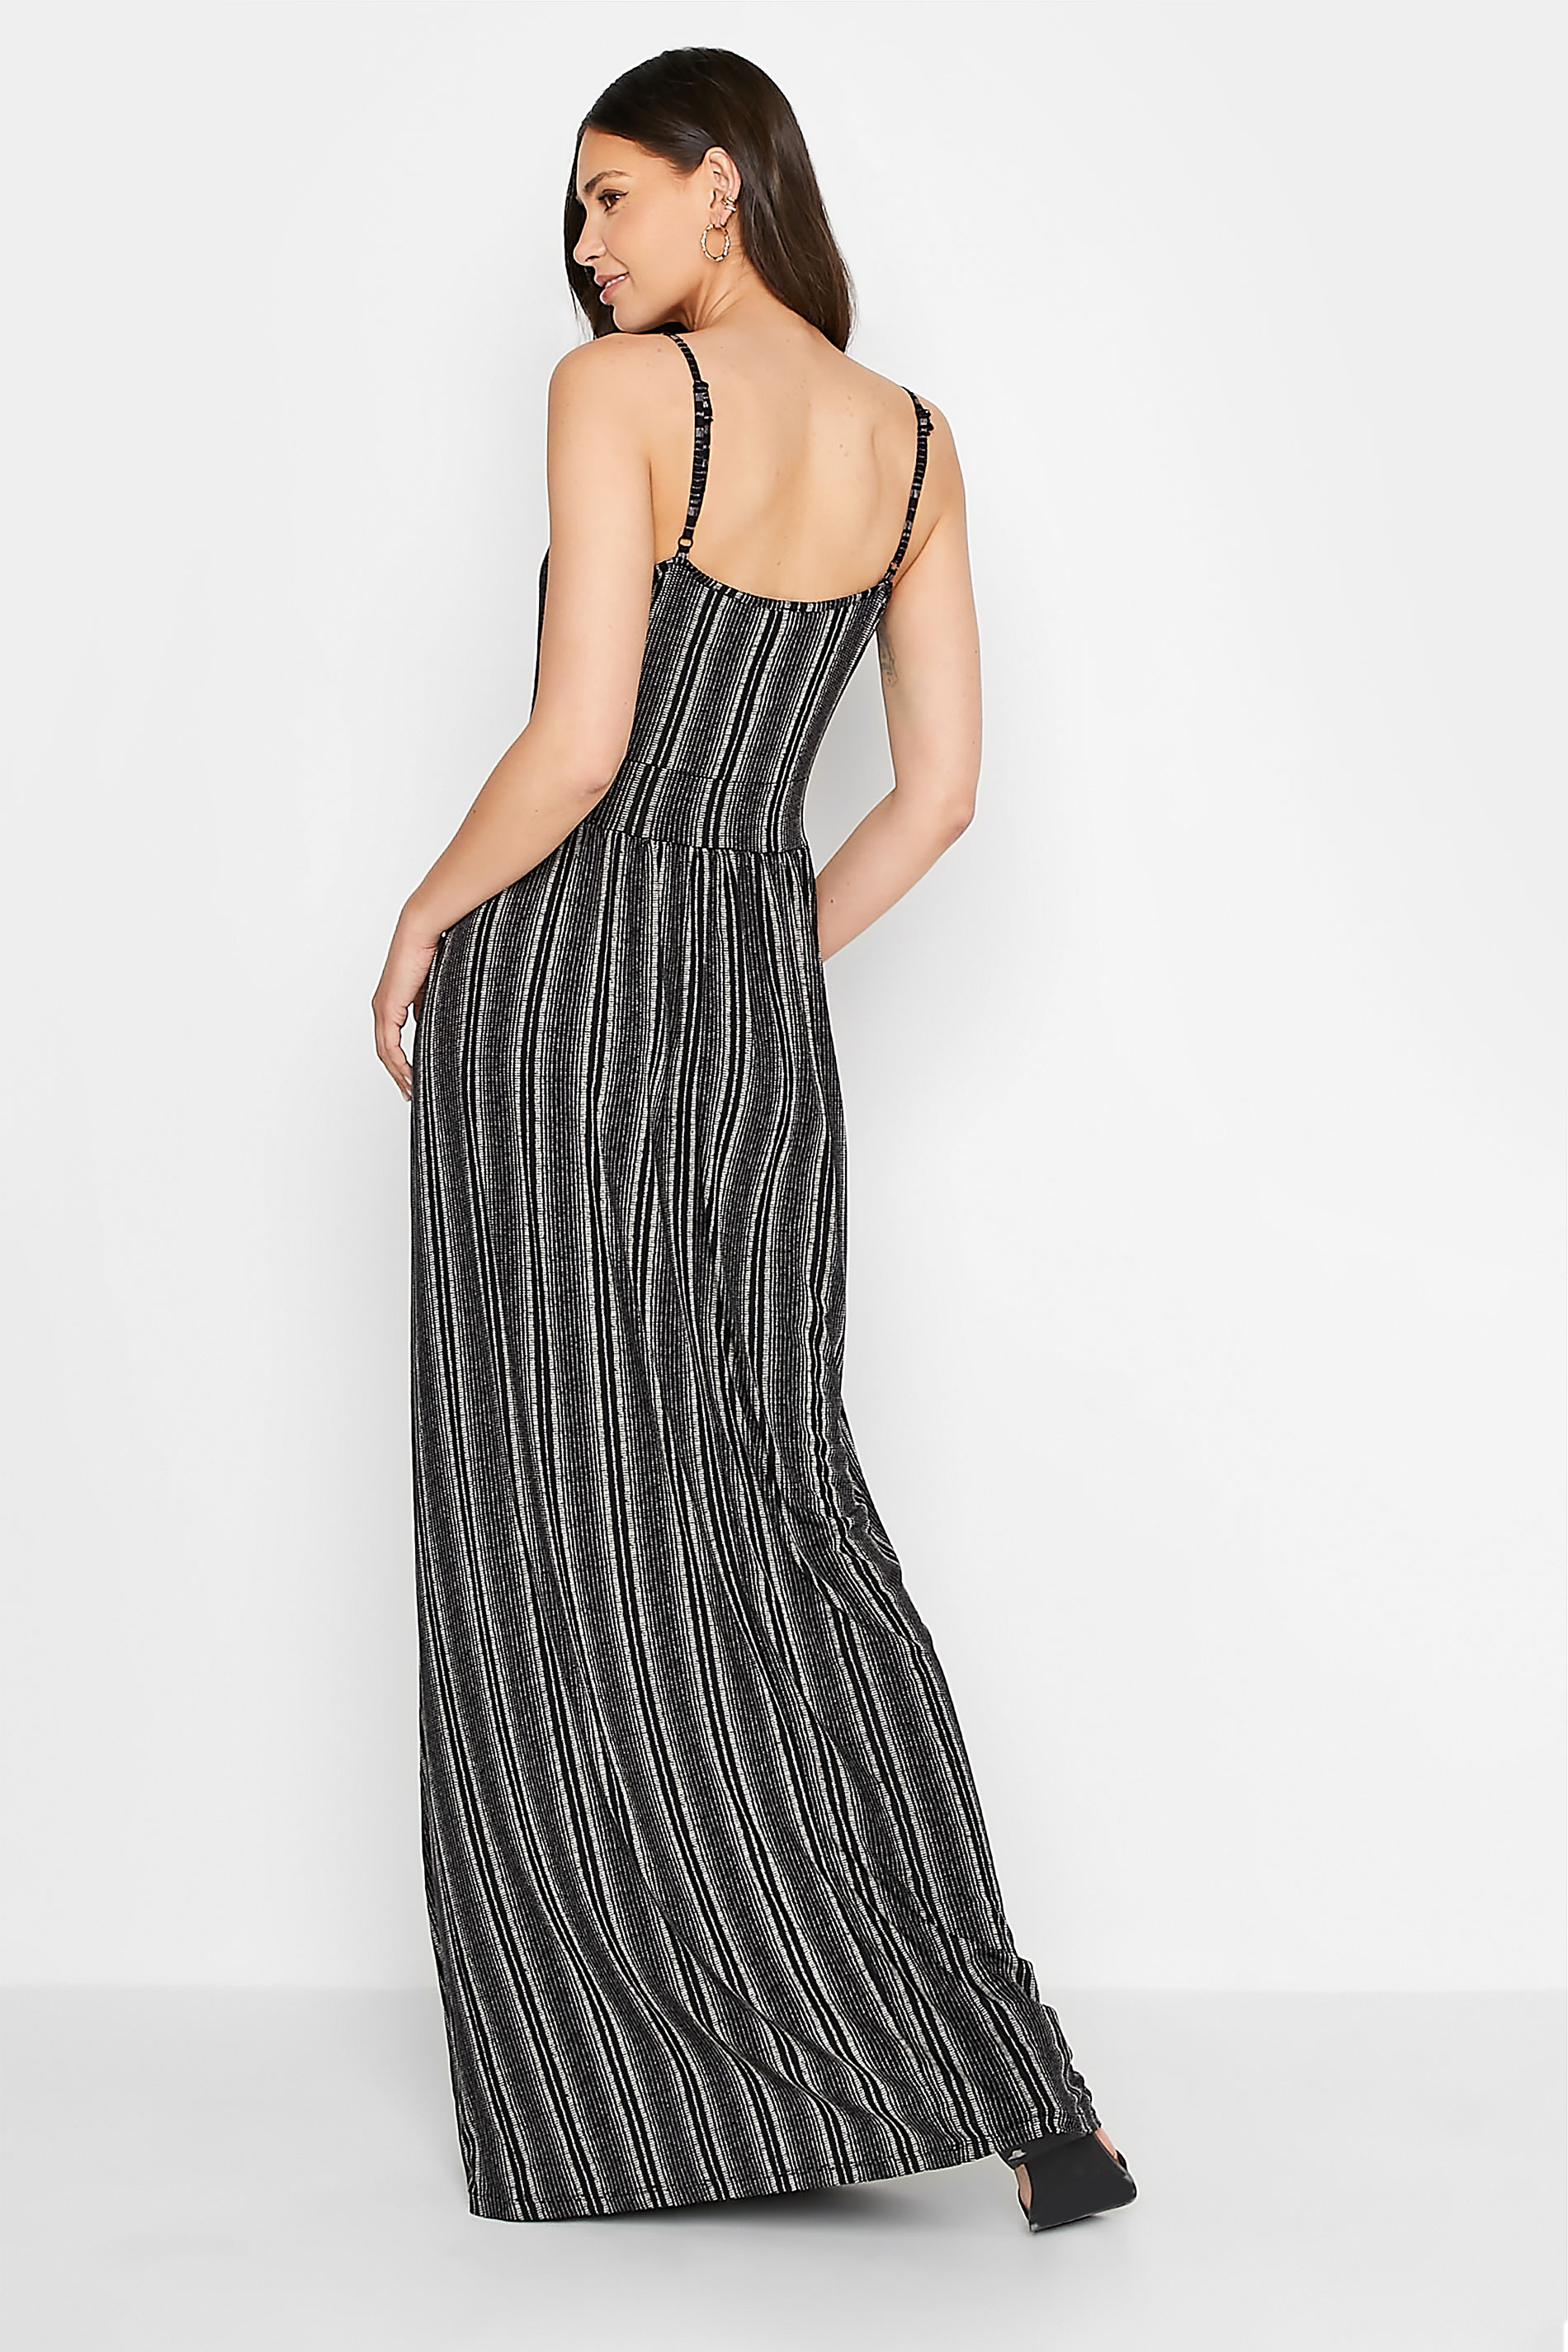 LTS Tall Black Striped Maxi Dress | Long Tall Sally 3